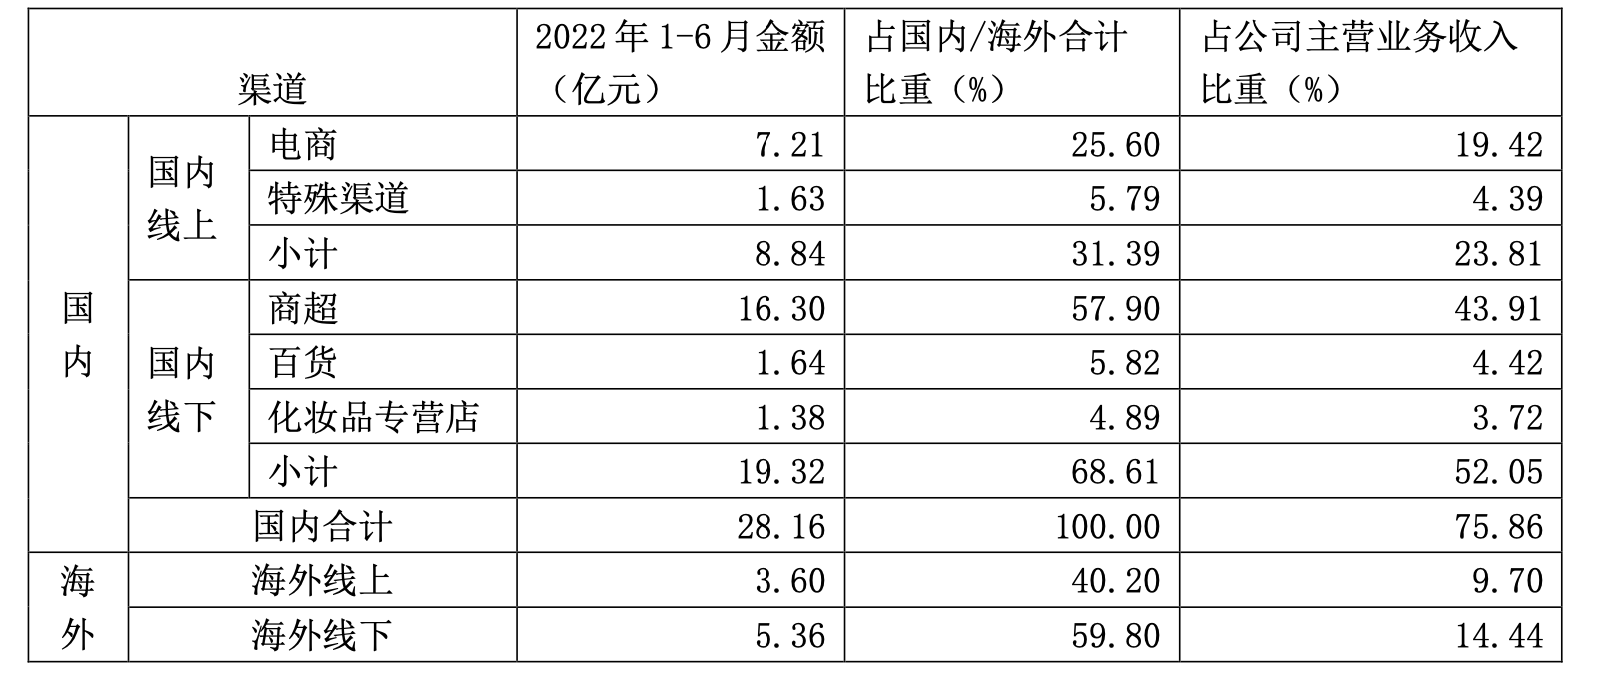 上海家化上半年净利降近45%力争下半年营收两位数增长